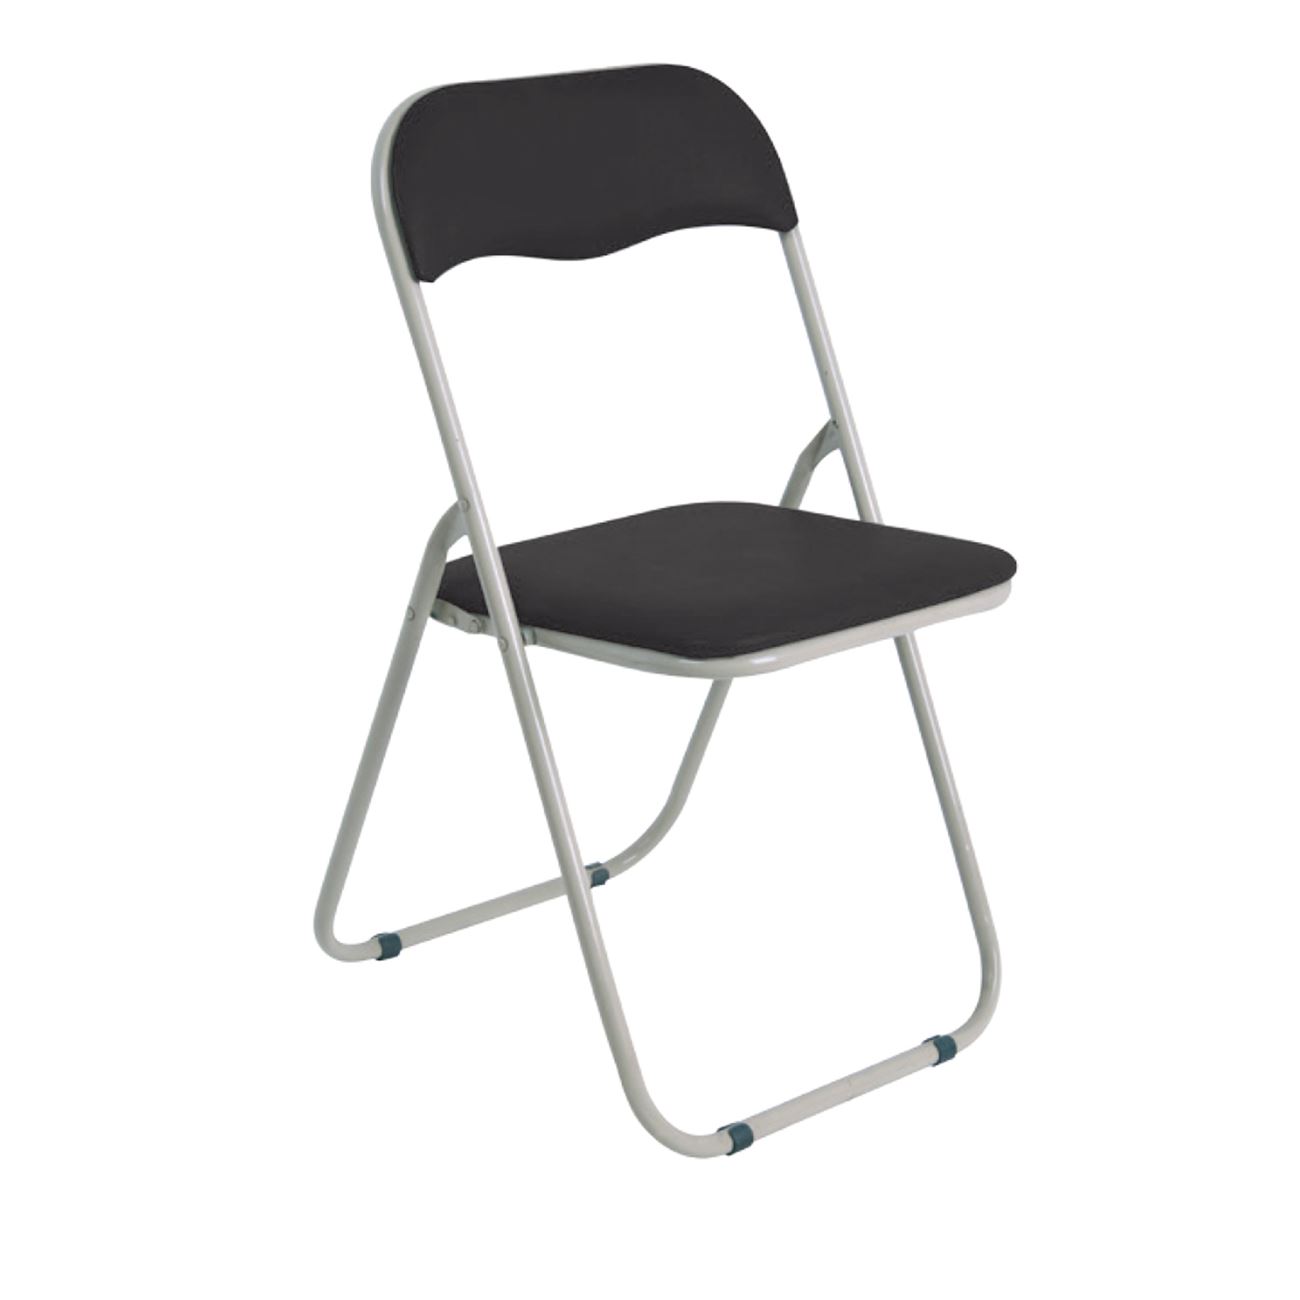 Сгъваем стол сиво-черен цвят